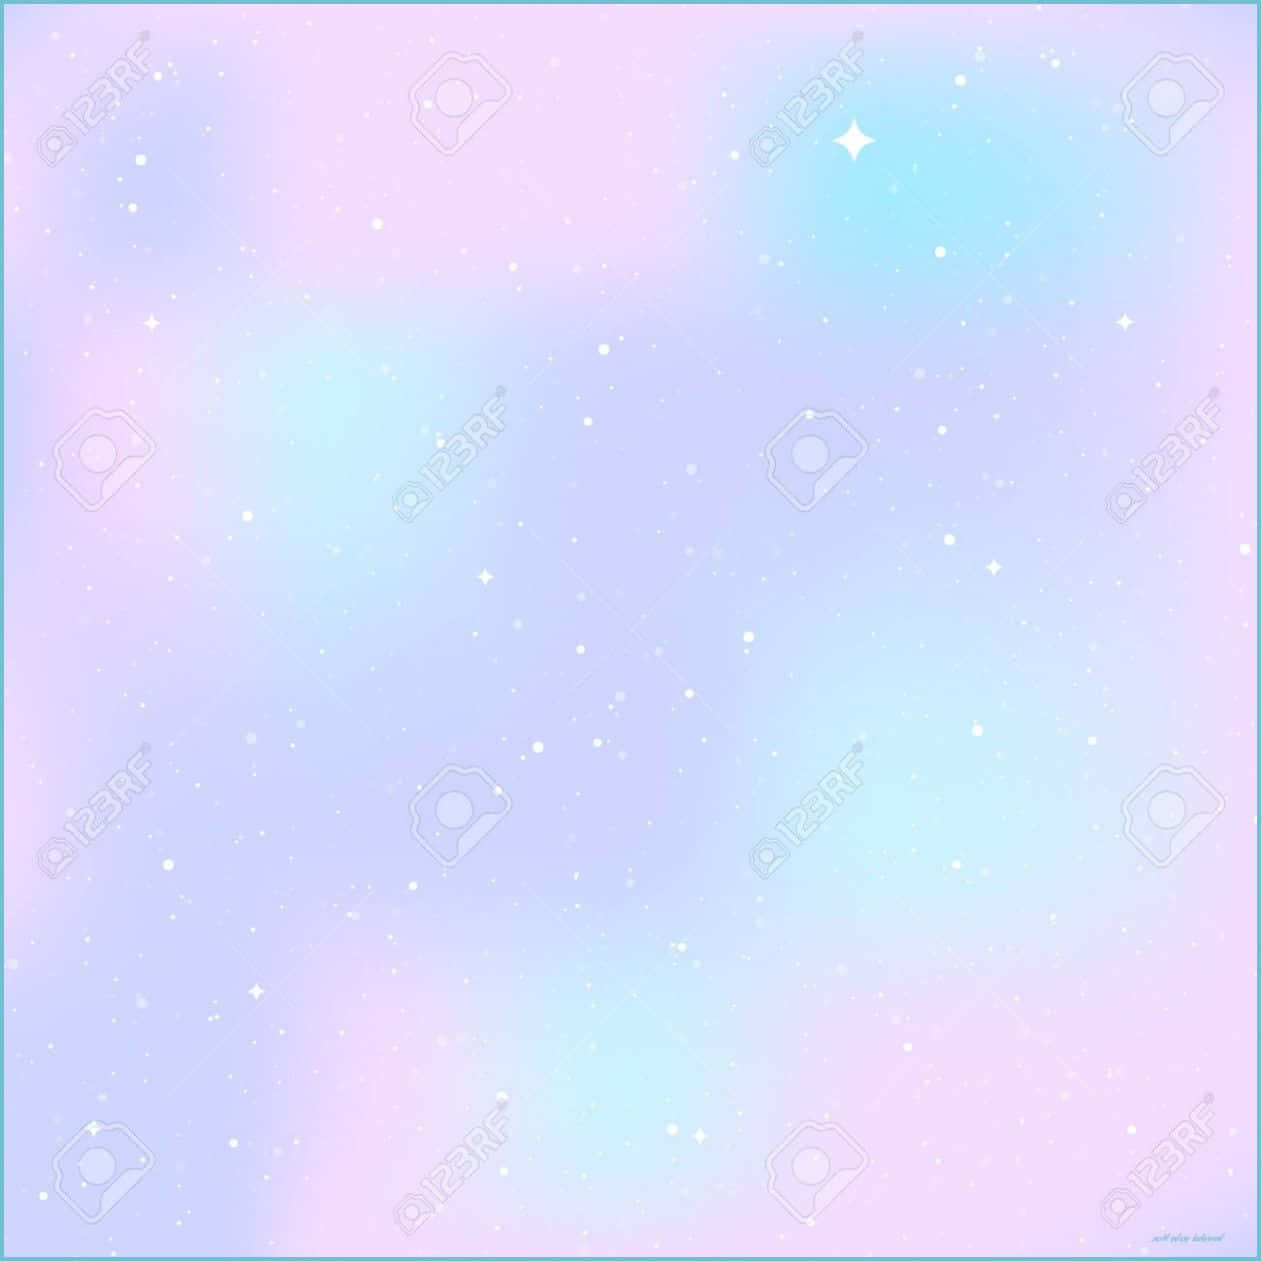 Erlebedie Schönheit Des Kosmos Mit Diesem Atemberaubenden Niedlichen Pastell-galaxien-hintergrundbild. Wallpaper